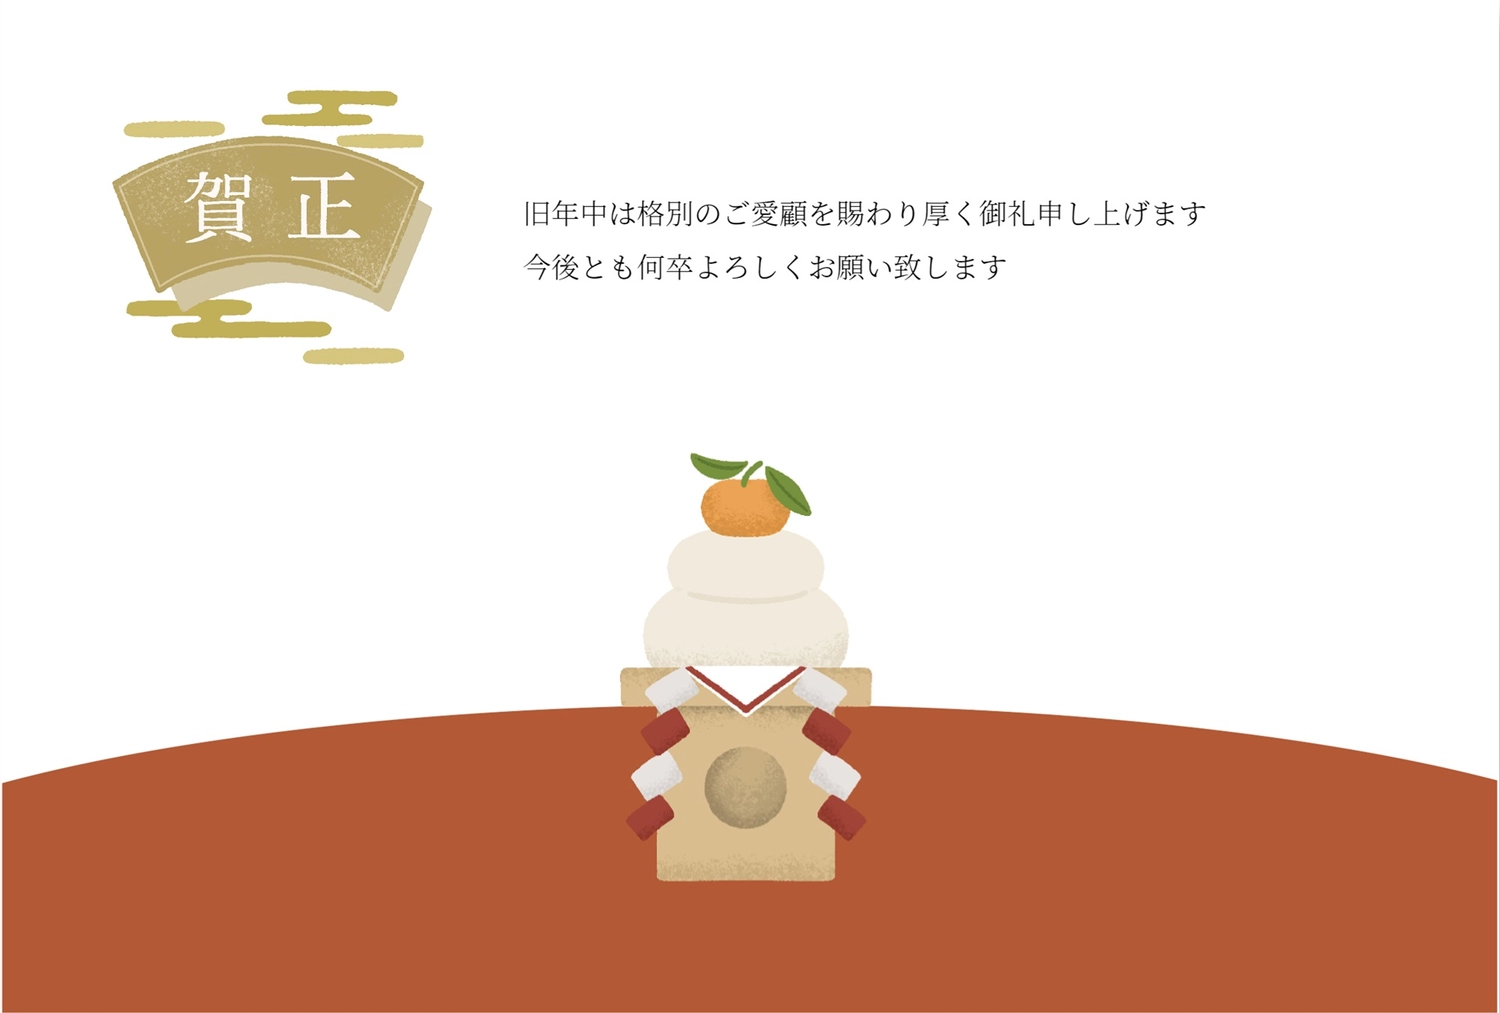 賀正鏡餅年賀状, Sự minh họa, bản mẫu, bên, Thiệp năm mới mẫu